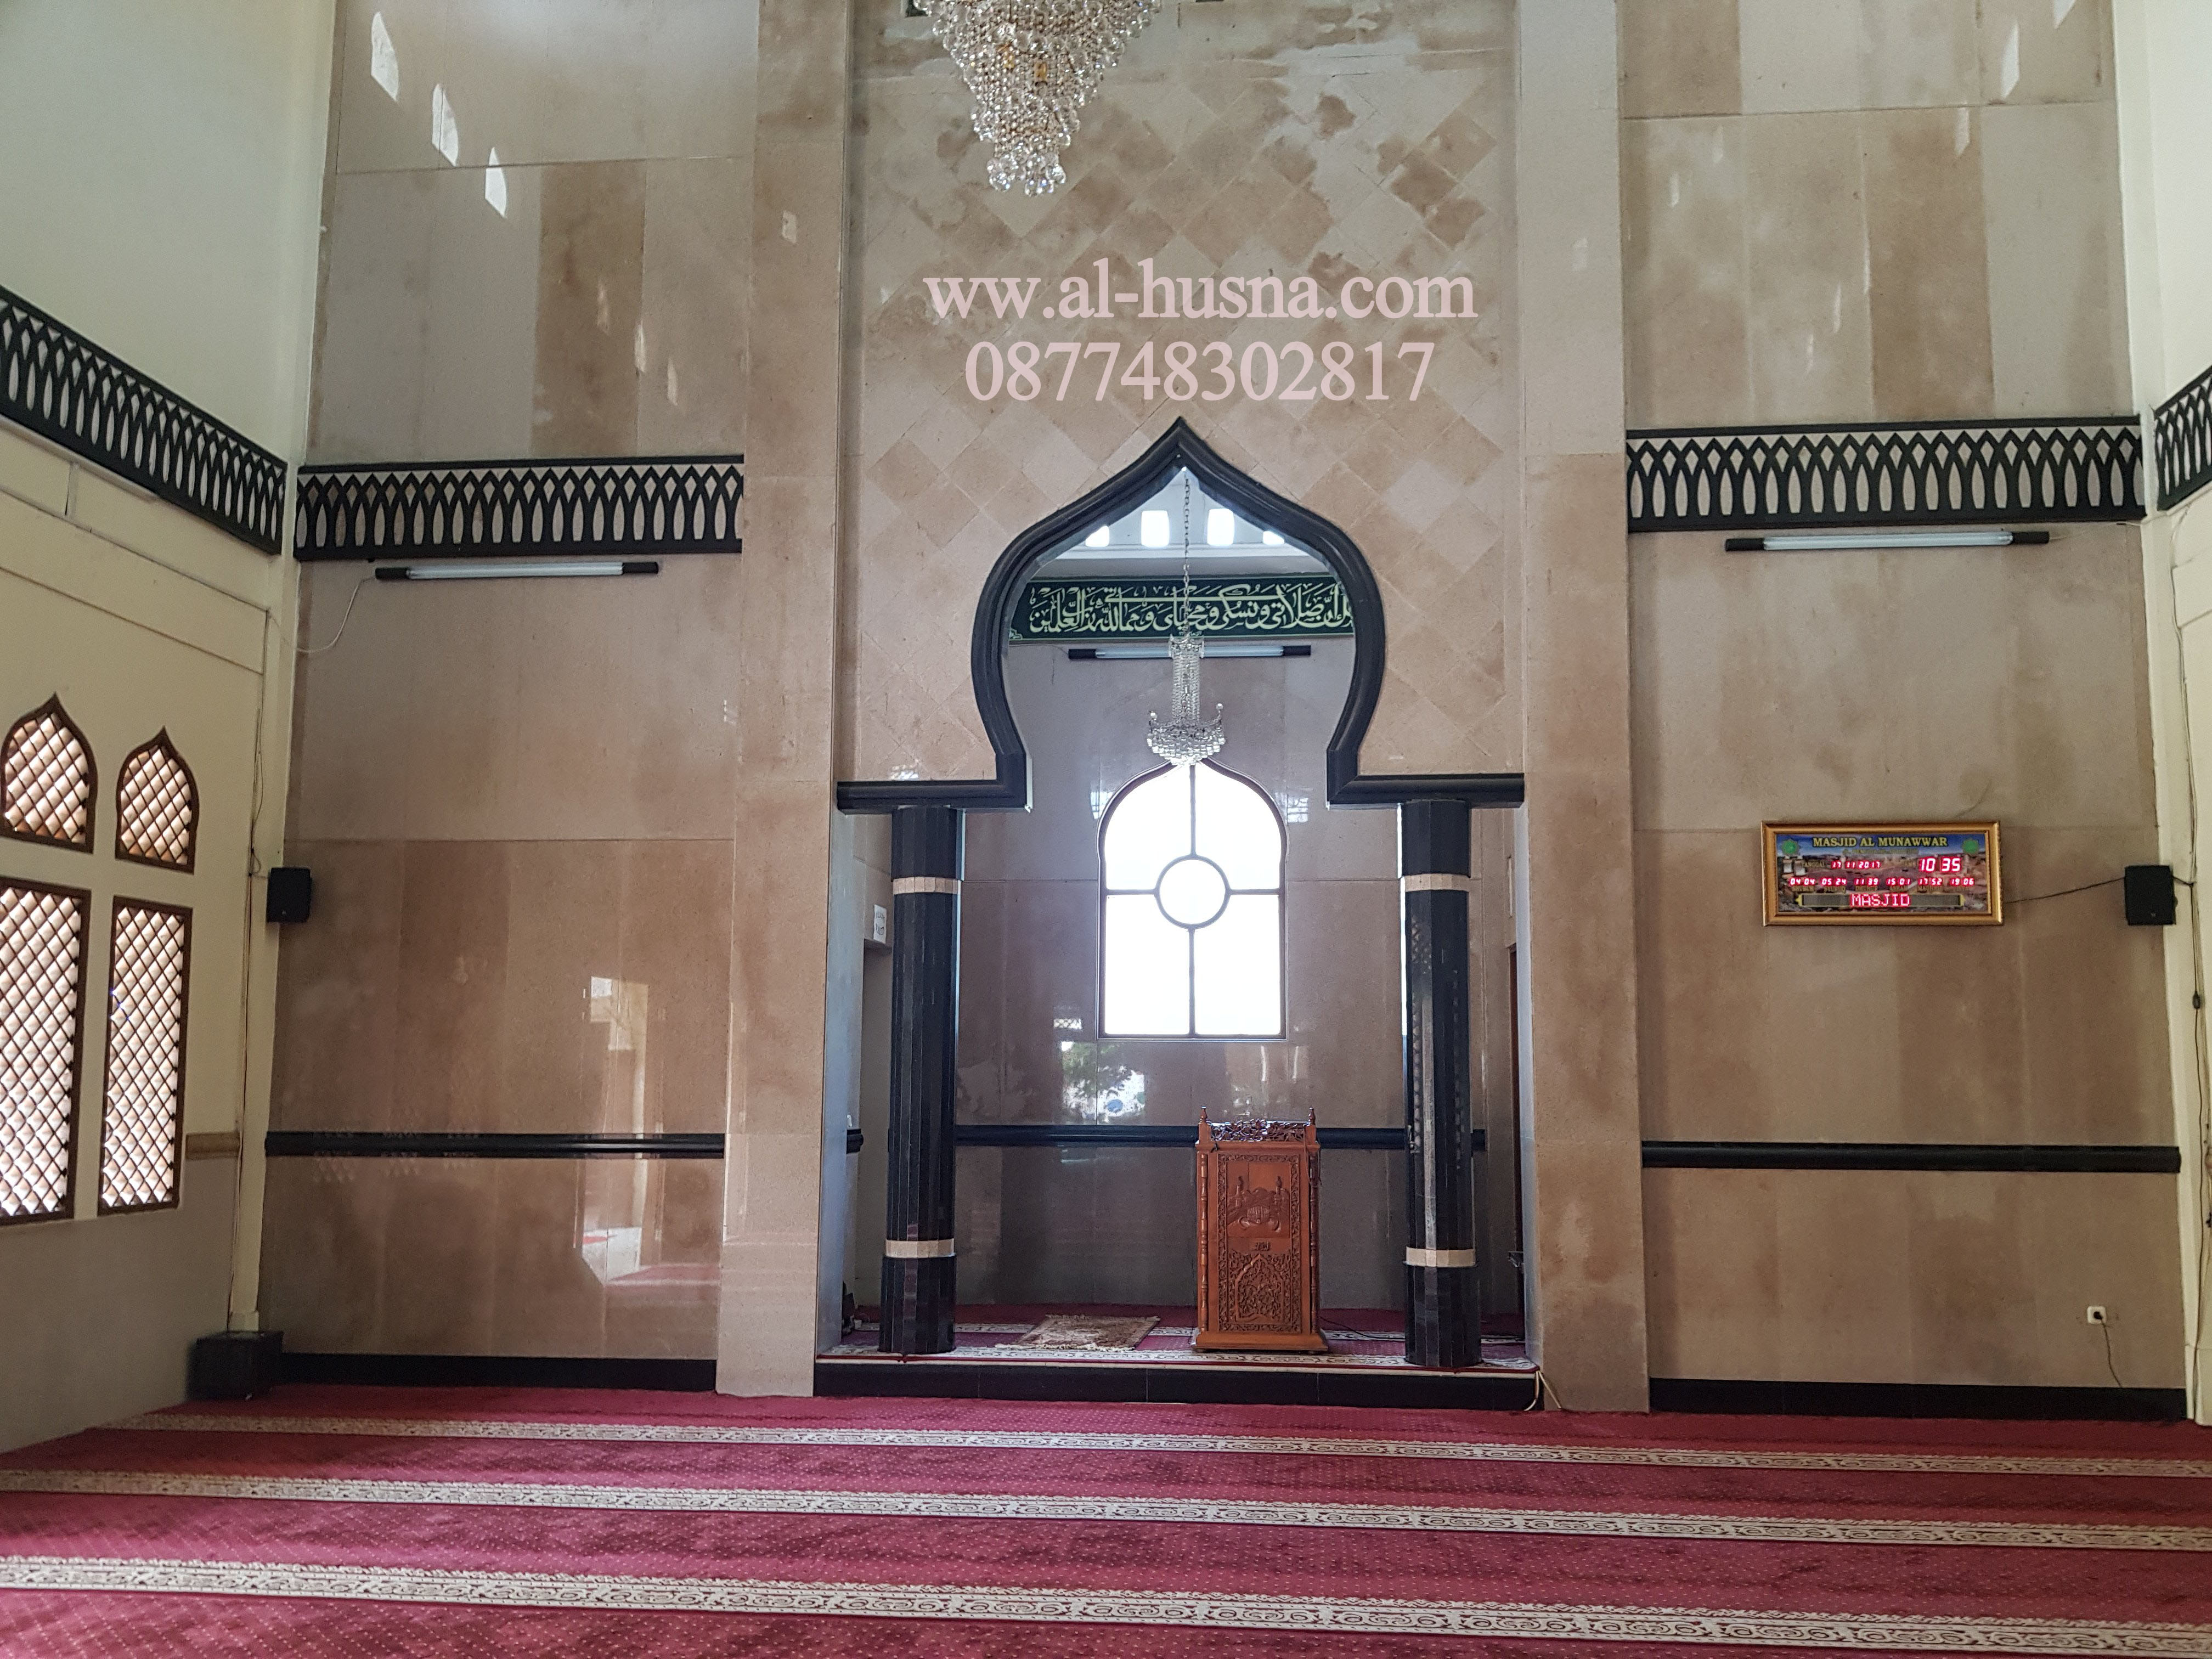 Jual Karpet Masjid Roll di Pancoran Jakarta